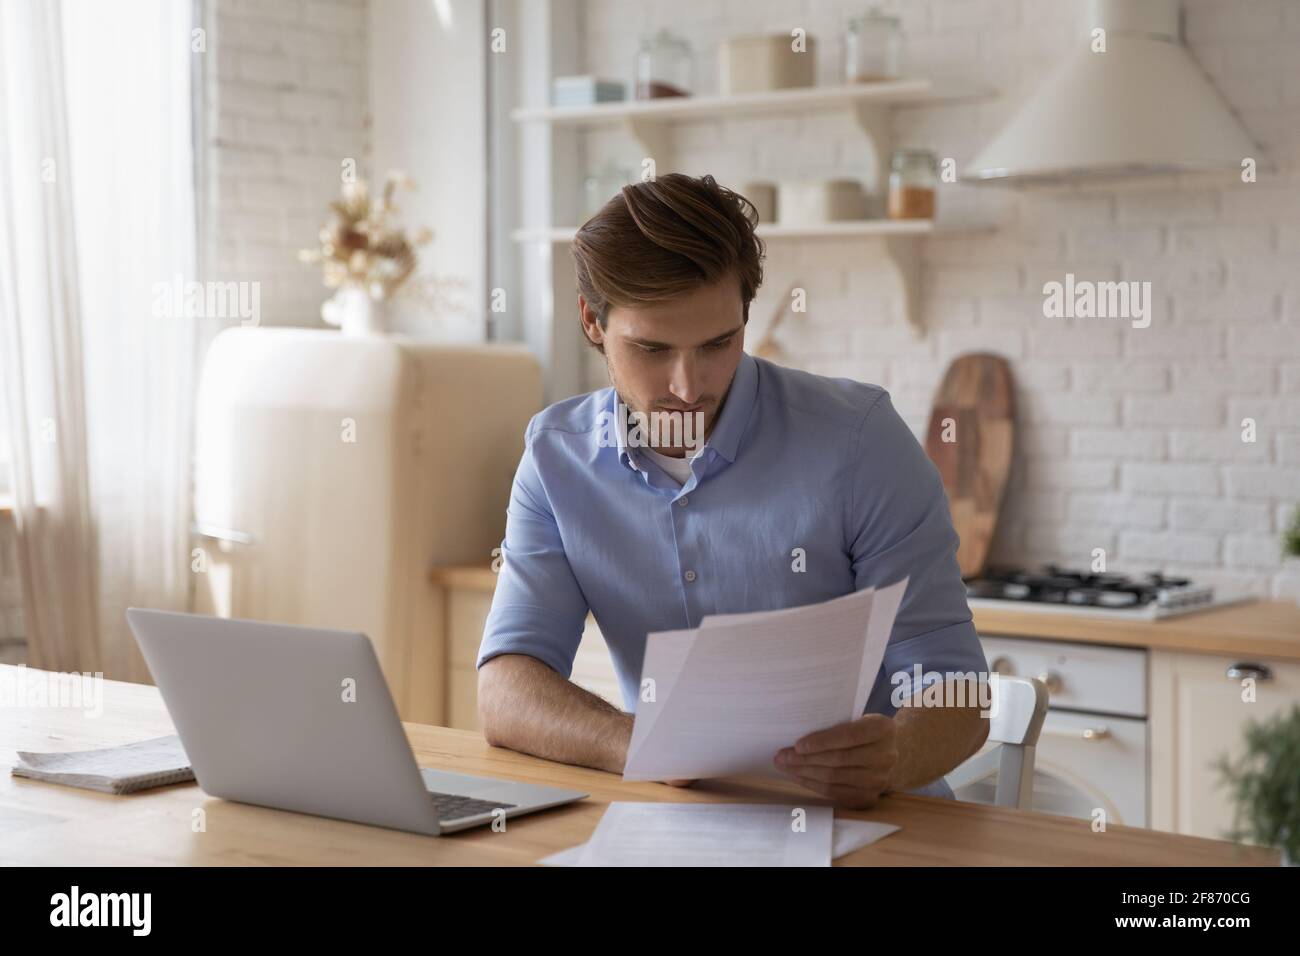 Fokussierter Mann, der mit Dokumenten arbeitet und mit einem Laptop am Tisch sitzt Stockfoto